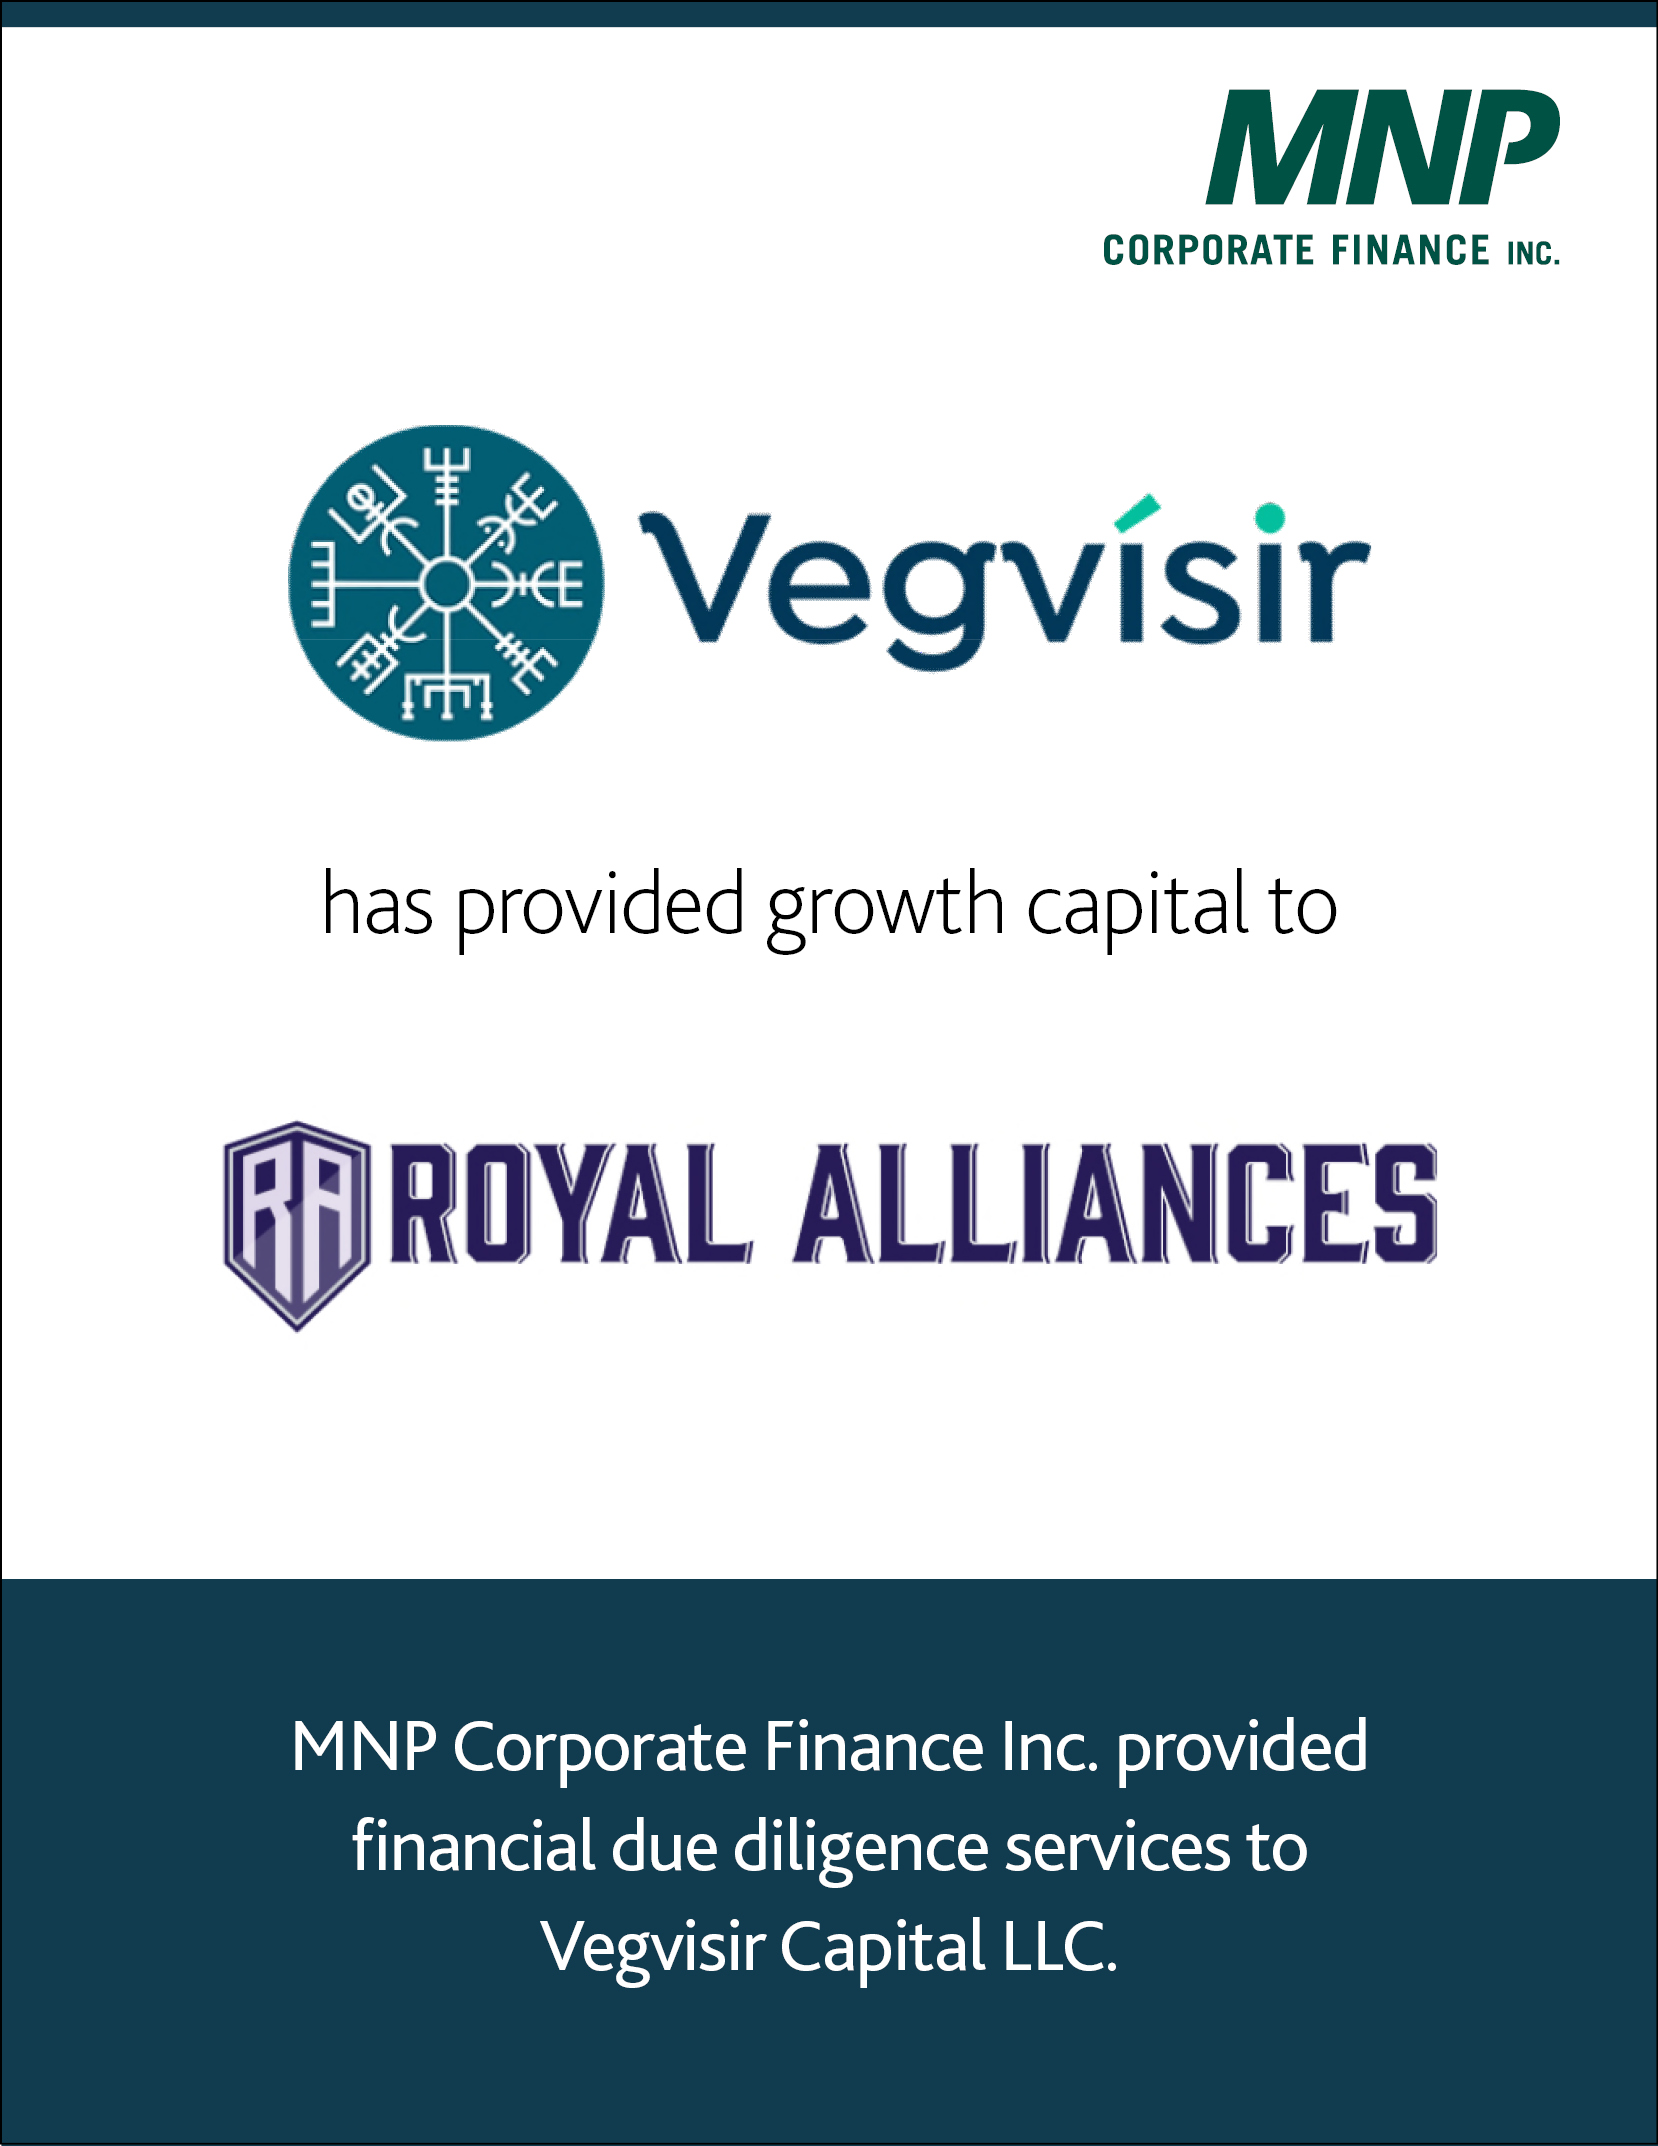 Vegvisir Capital LLC has provided growth capital to Royal Alliances